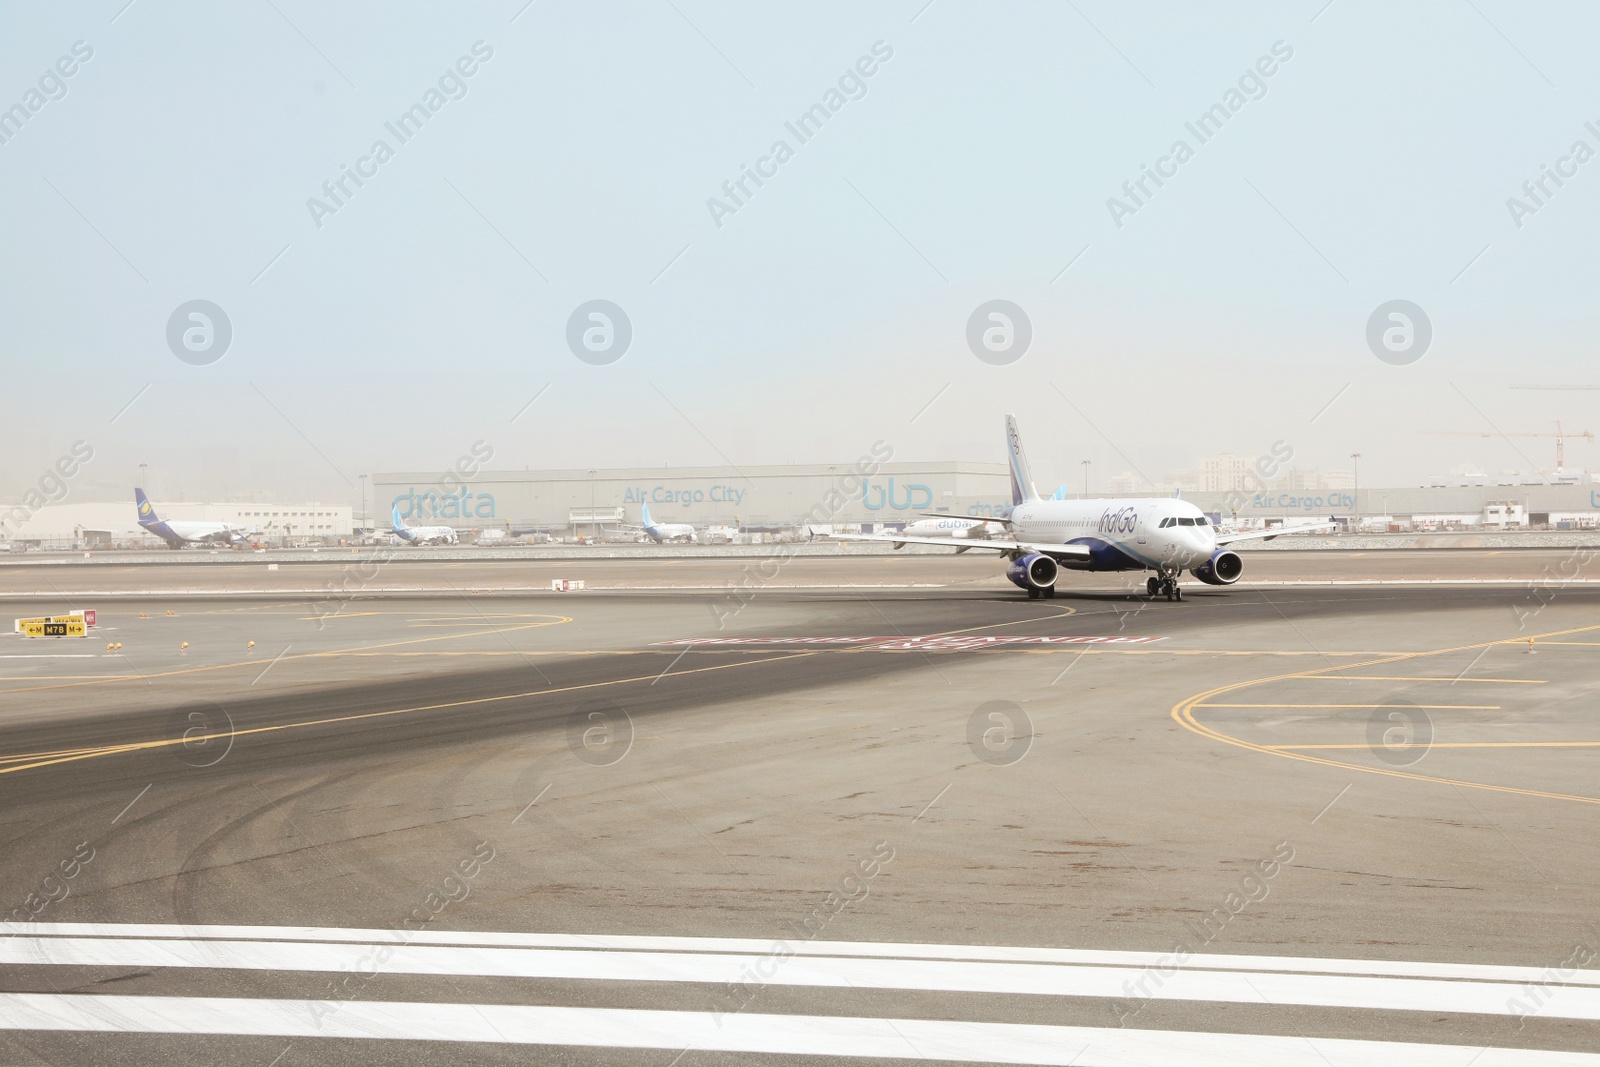 Photo of DUBAI, UNITED ARAB EMIRATES - NOVEMBER 06, 2018: Airport landing zone with IndiGo plane